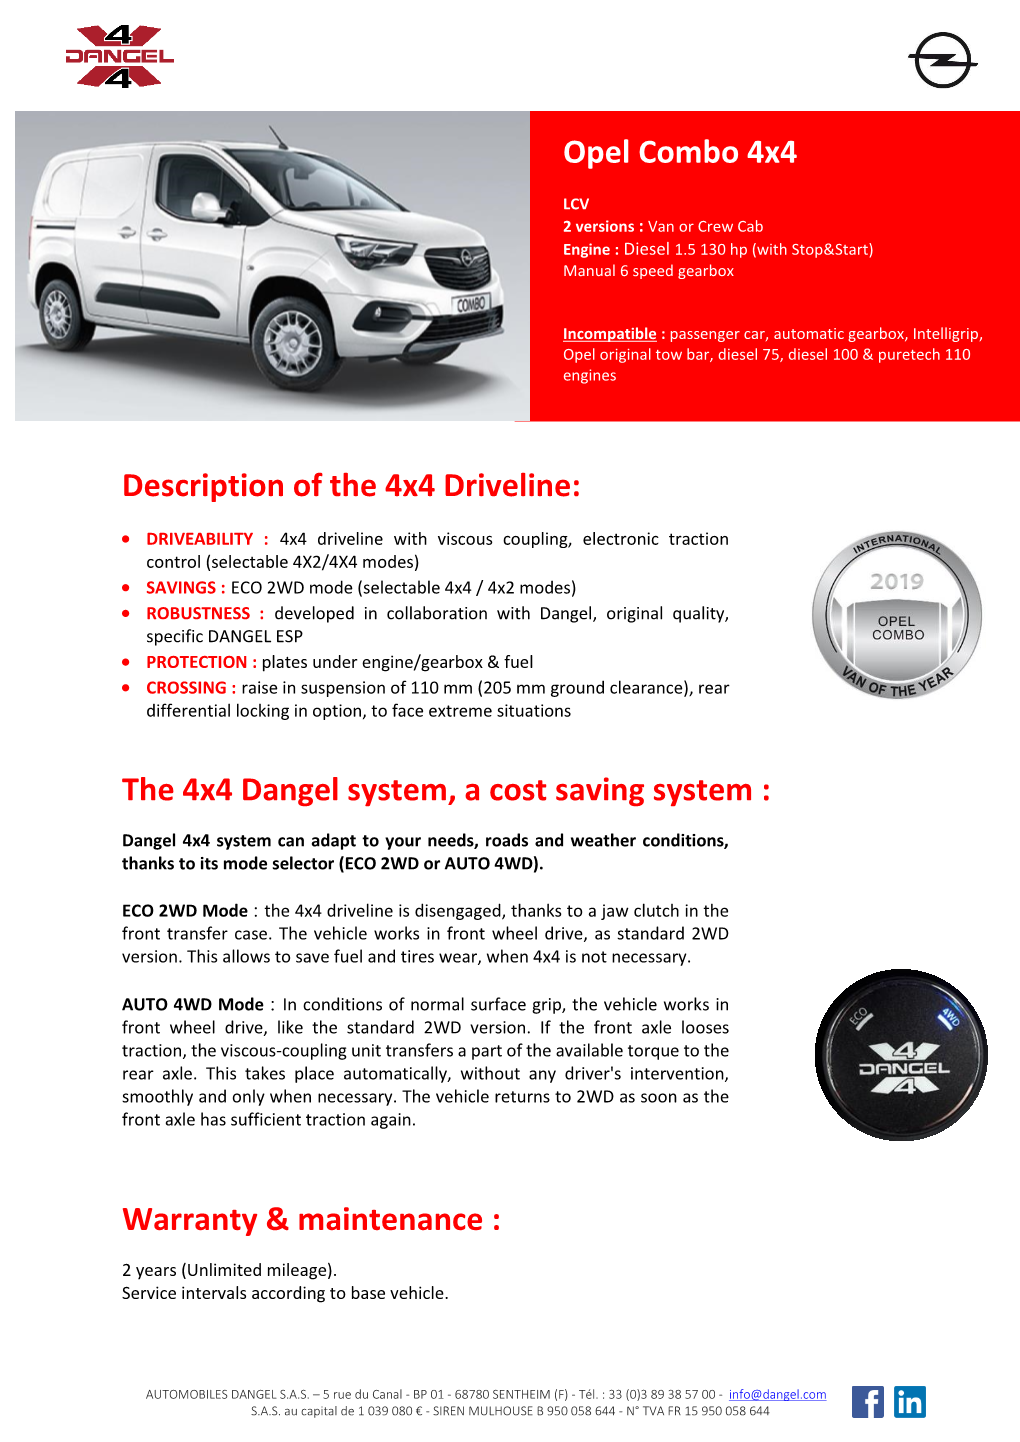 Warranty & Maintenance : Opel Combo